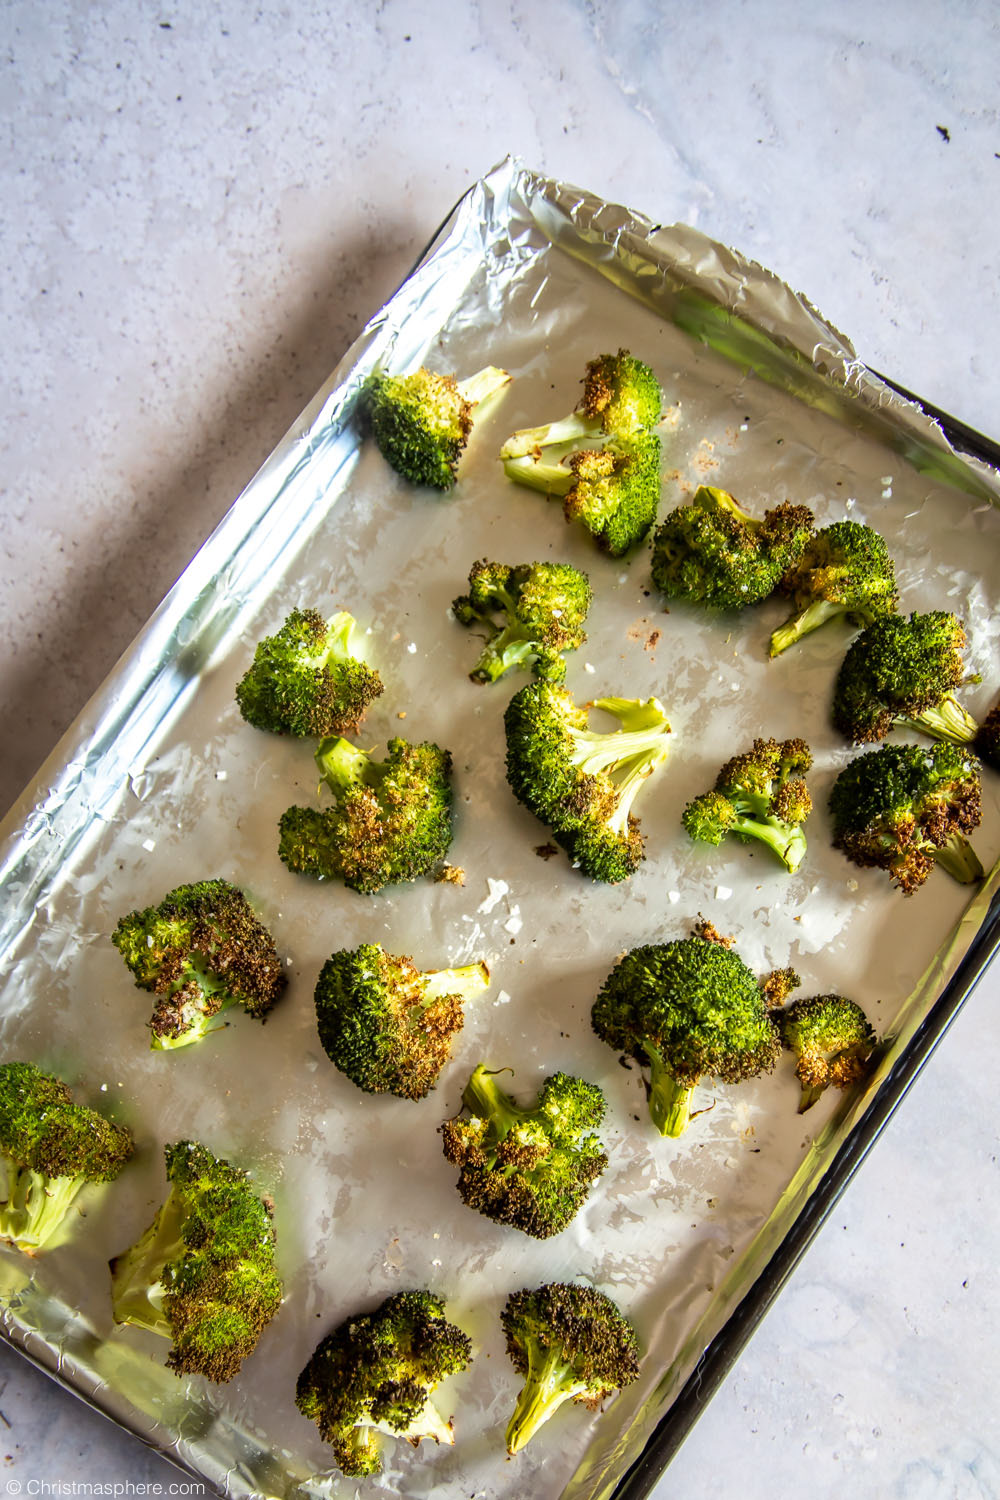 Delicious Roasted Broccoli Recipe